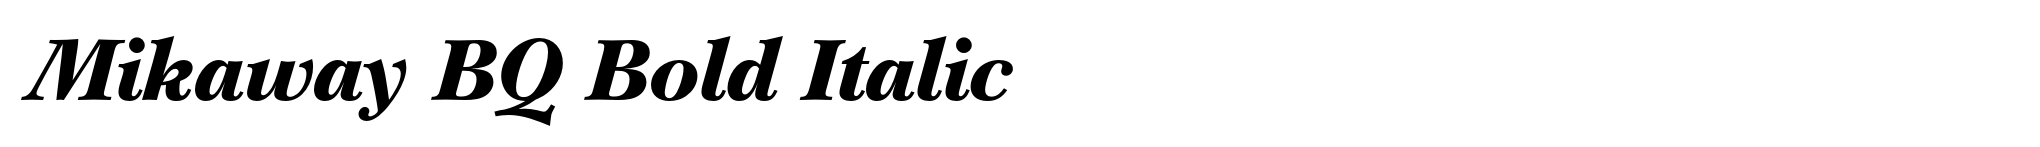 Mikaway BQ Bold Italic image